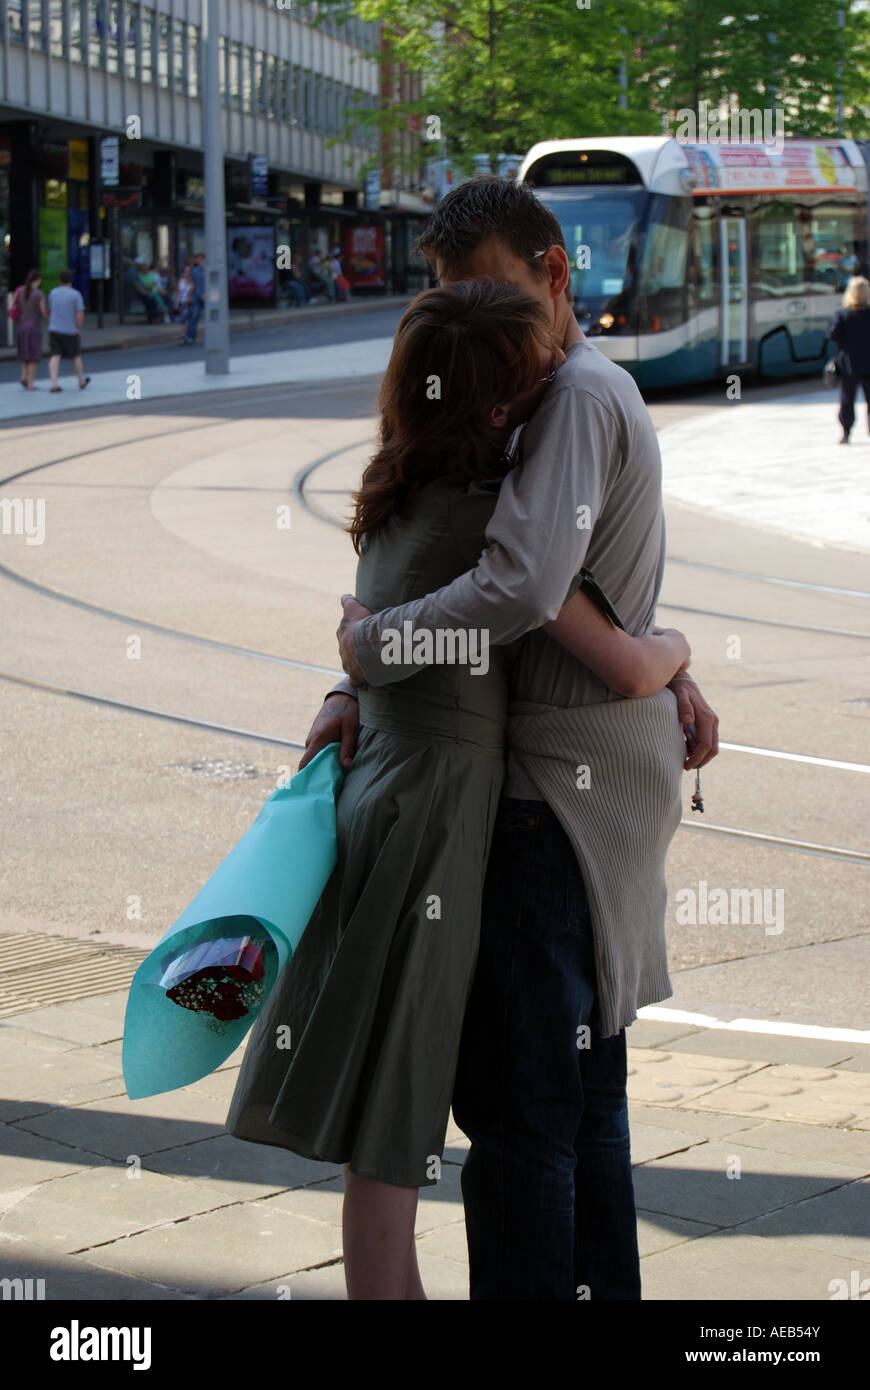 Young couple kissing, Old Market Square, Nottingham, Nottinghamshire, England, United Kingdom Stock Photo